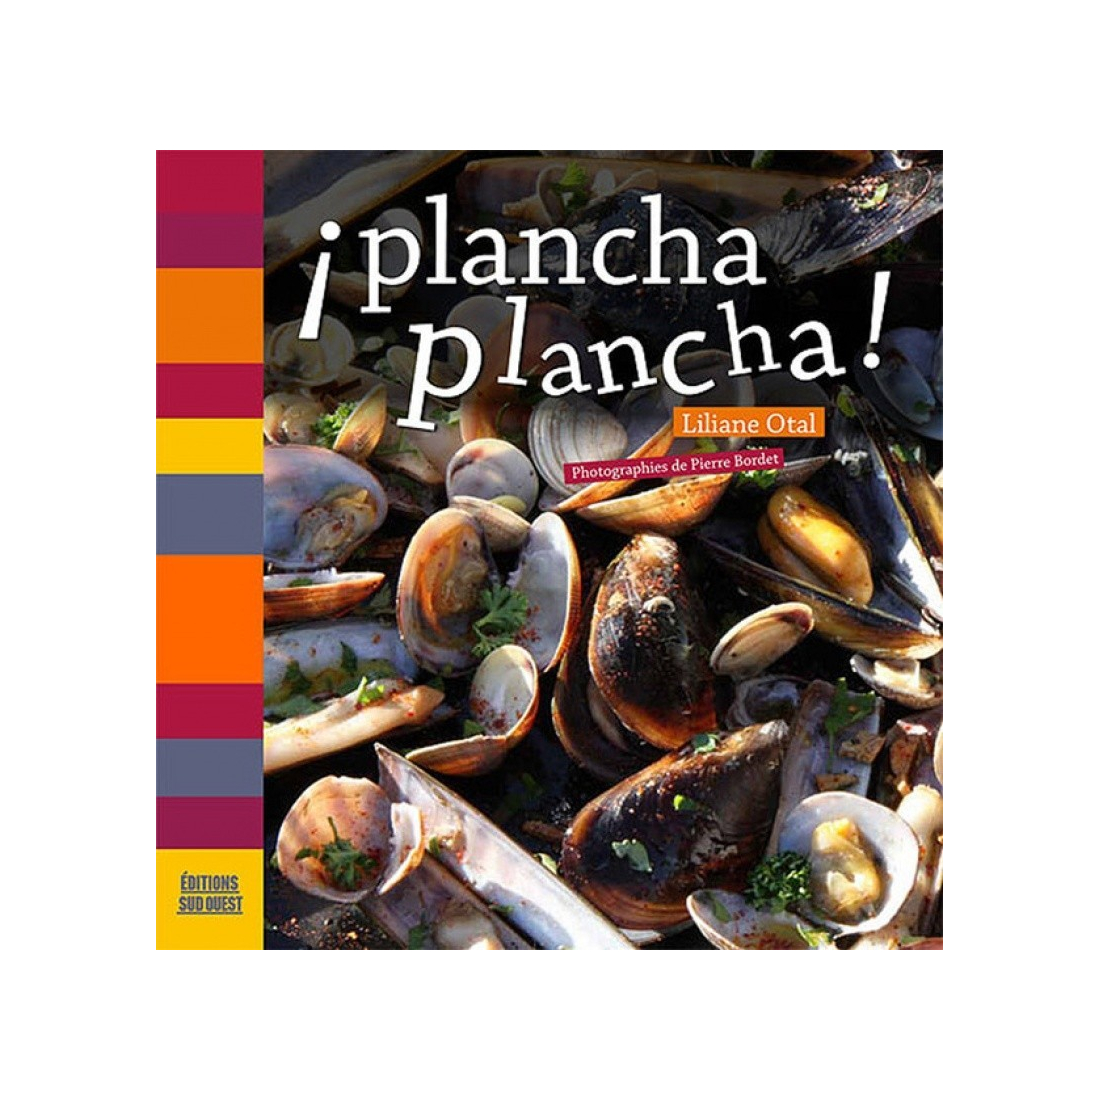 Plancha Plancha ! A17-ED09 A la Plancha® Editions et Publications